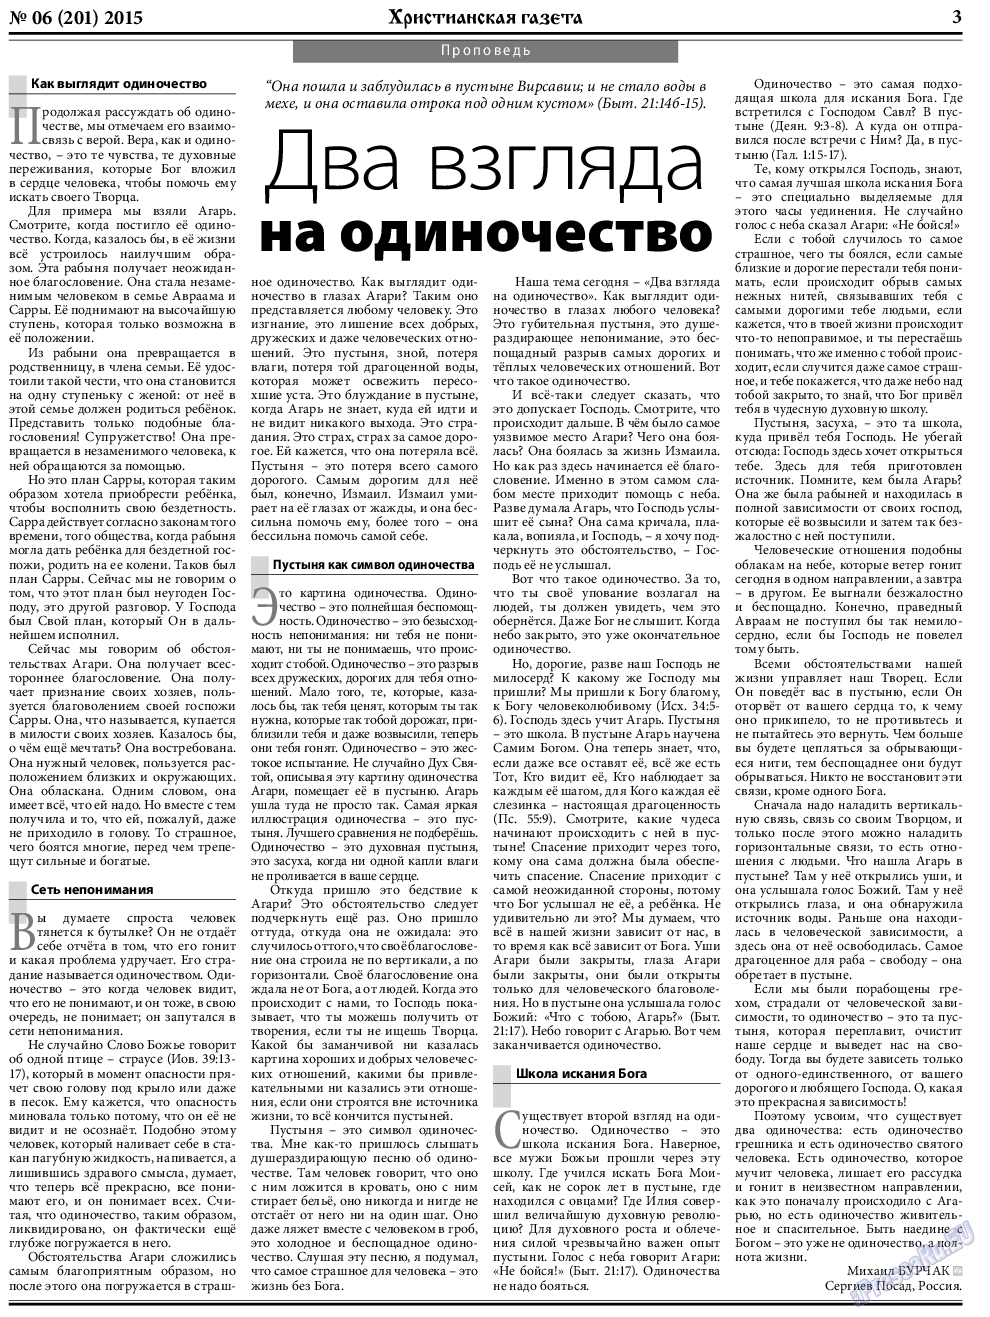 Христианская газета, газета. 2015 №6 стр.3